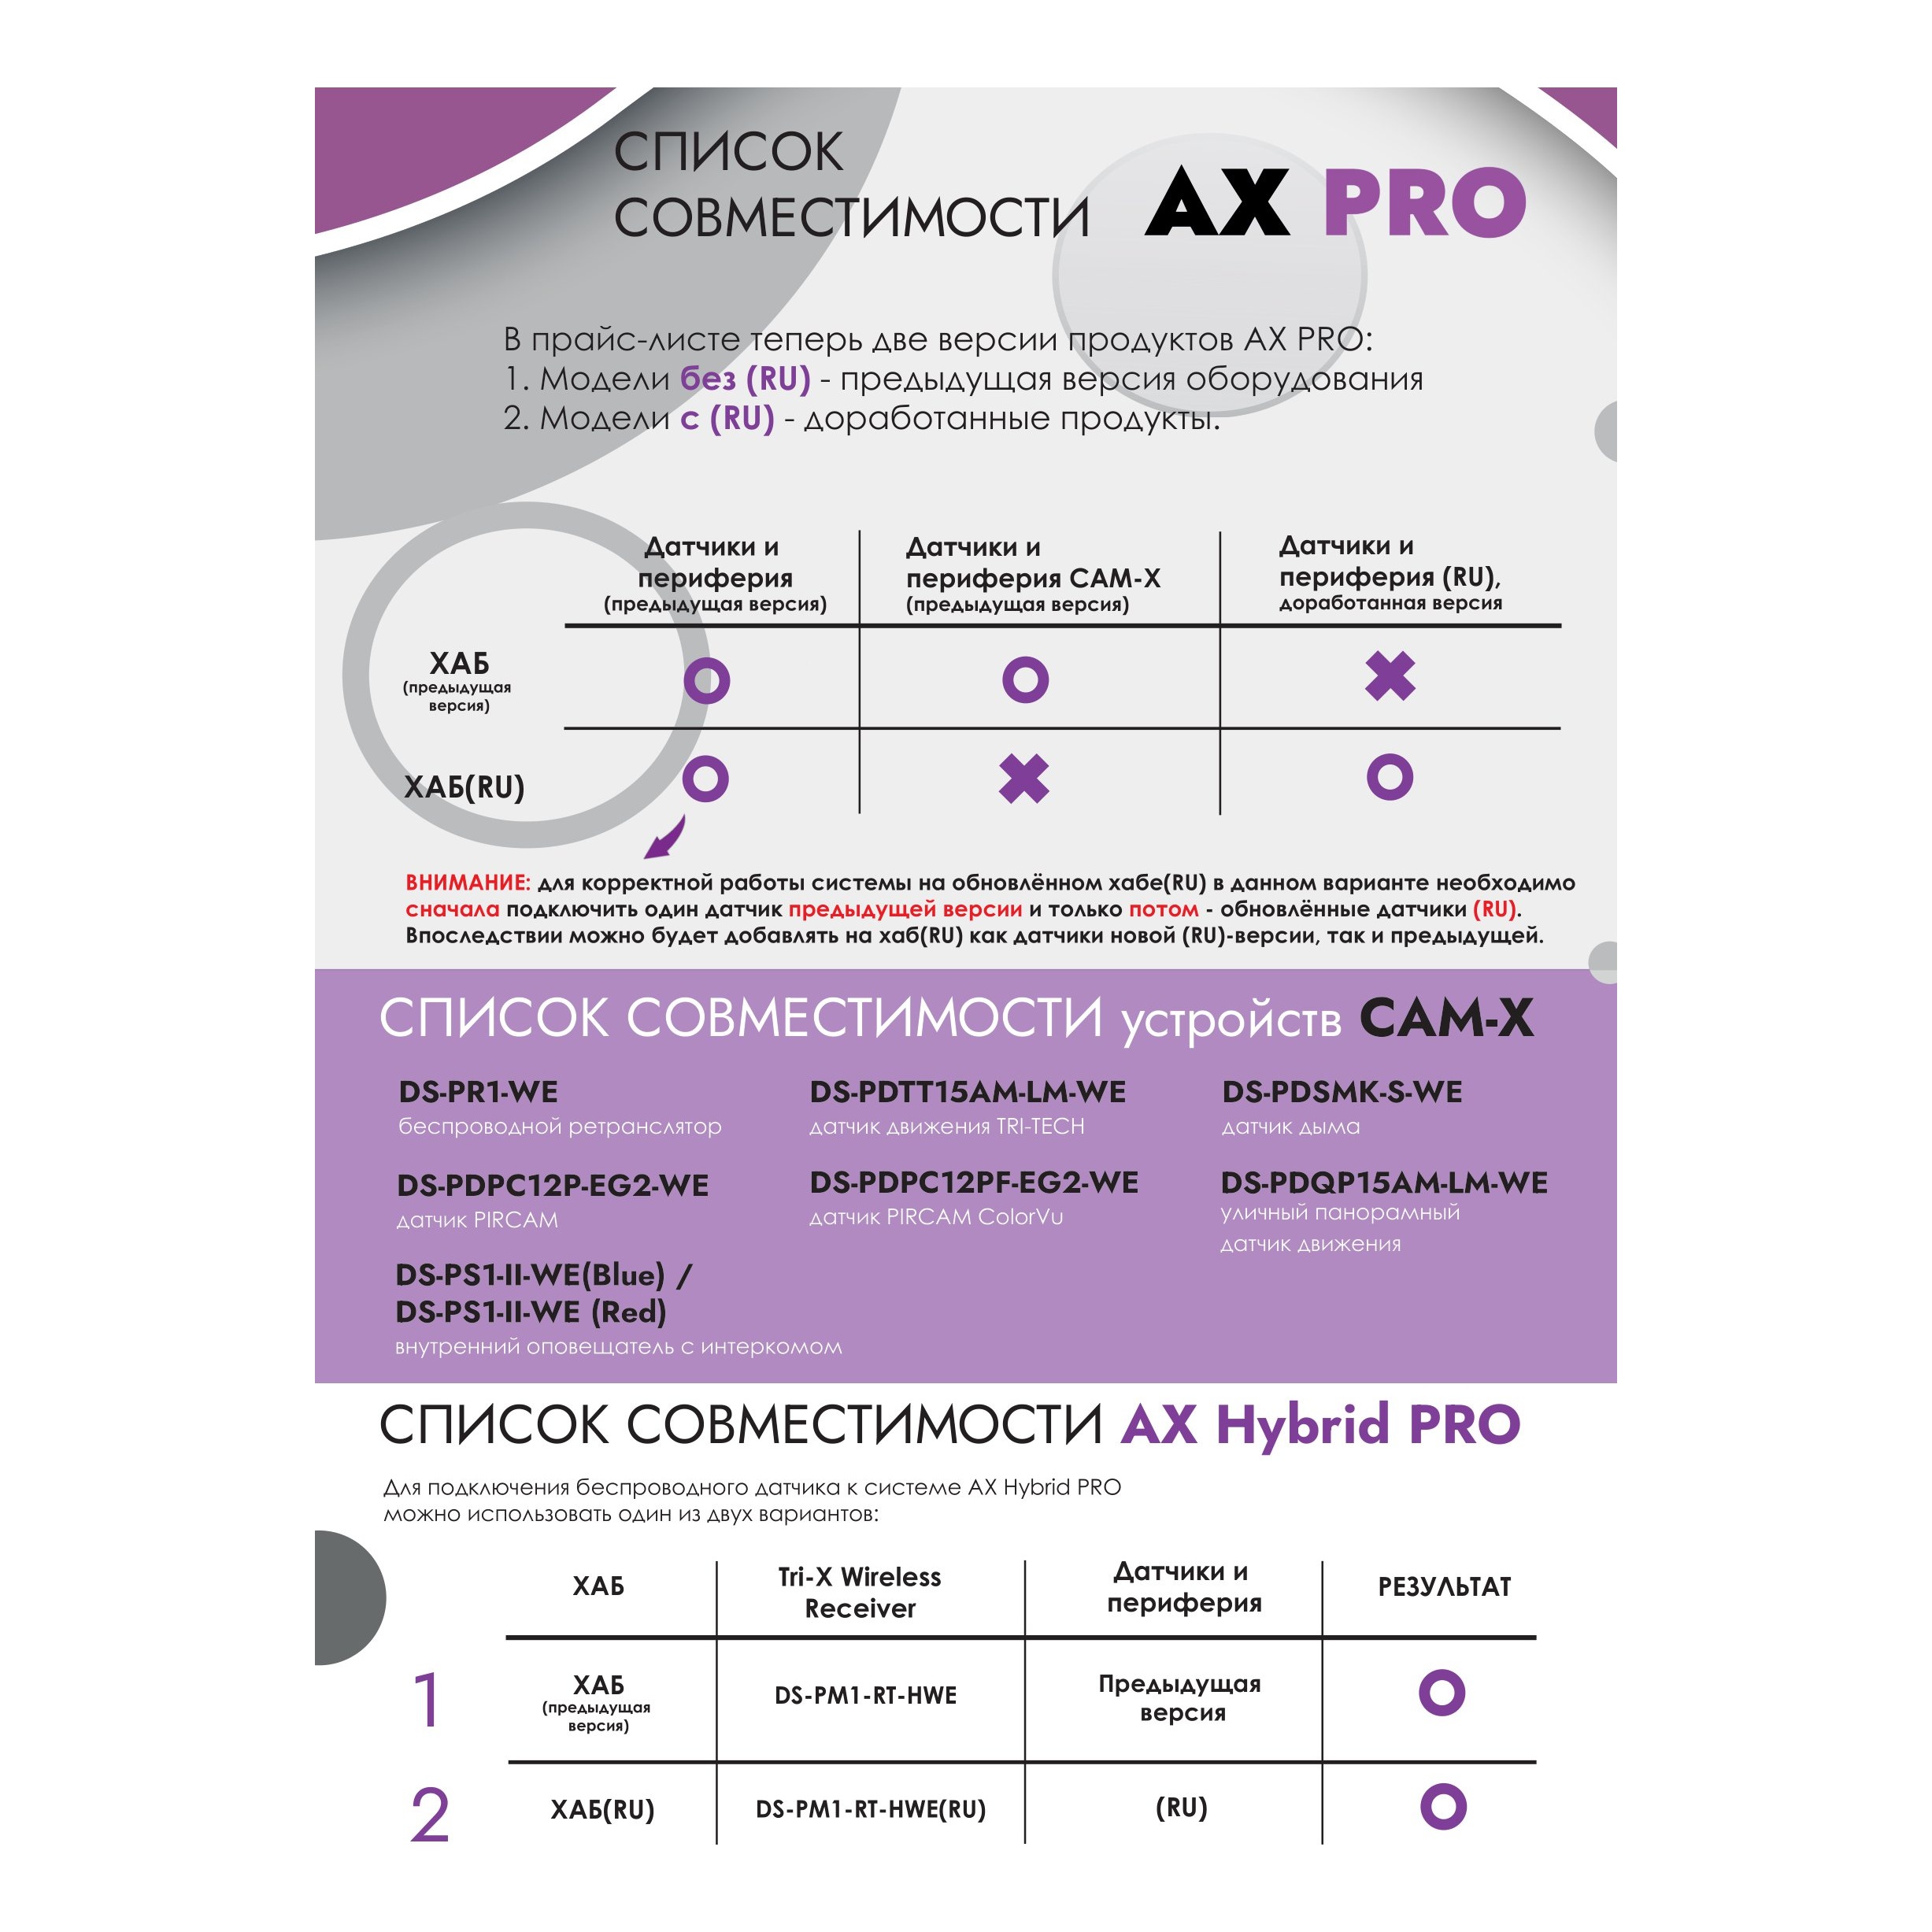 Hikvision AX PRO DS-PDPG12P-EG2-WE PIR датчик беспроводной с детекцией разбития стекла (2 в 1)